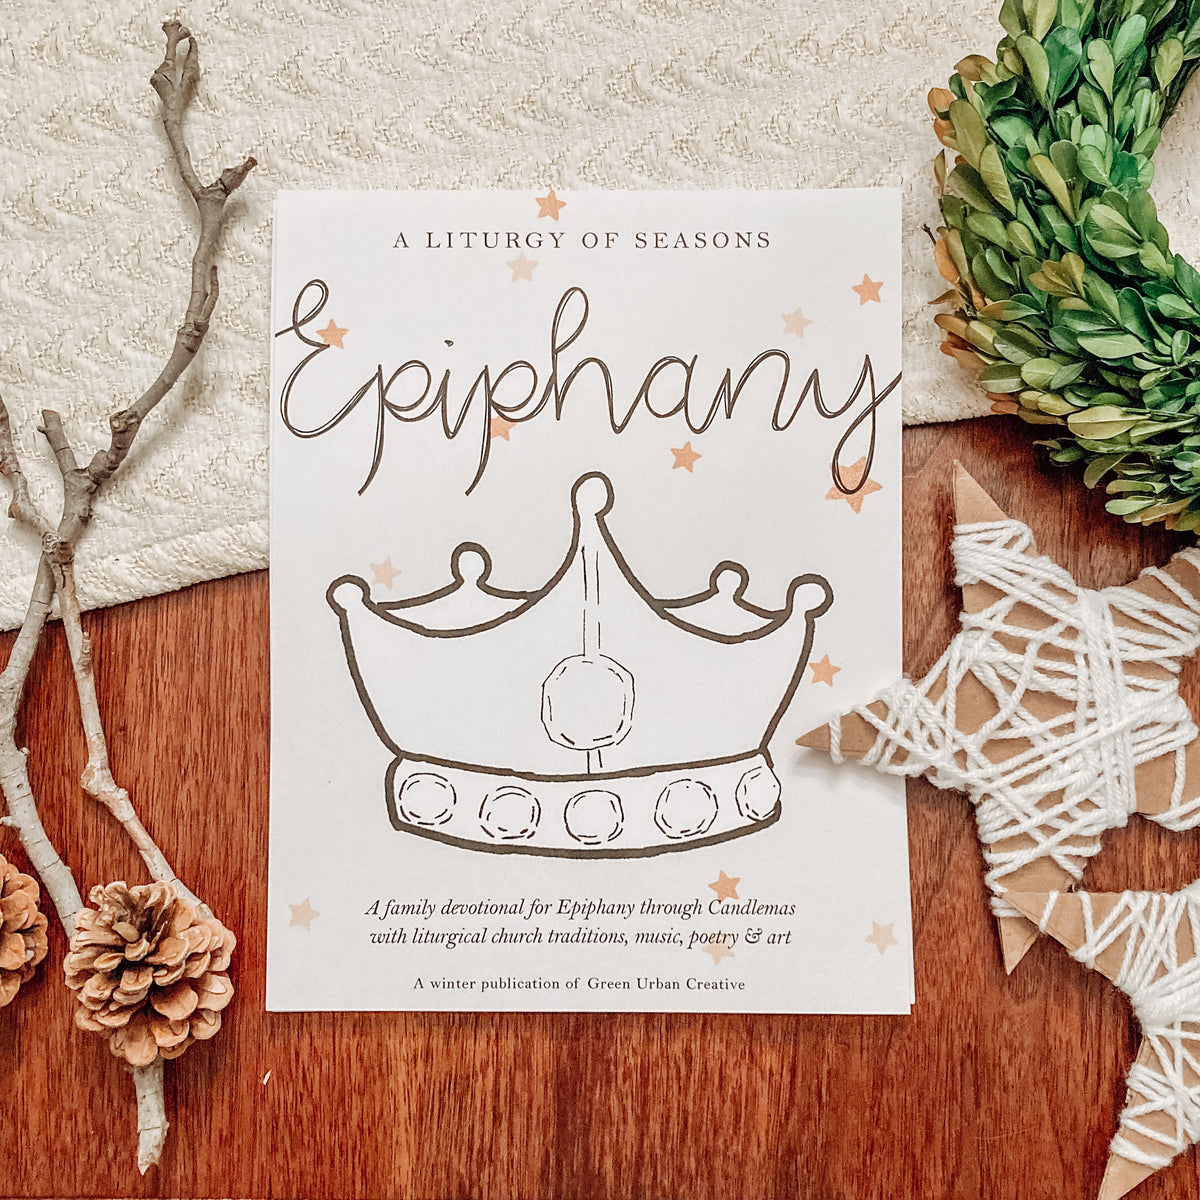 A Liturgy of Seasons: Epiphany